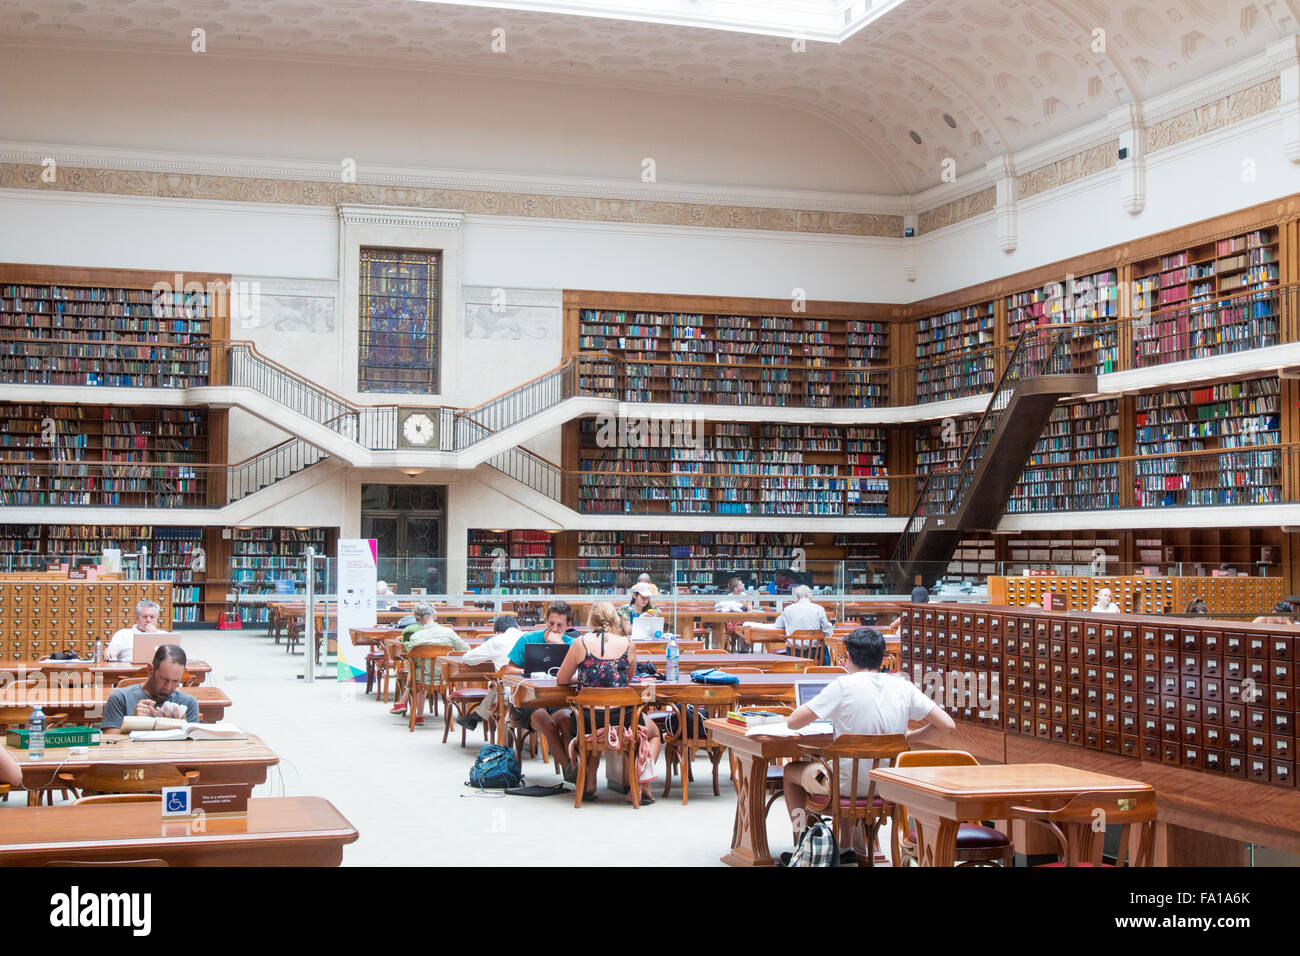 La Biblioteca Estatal de Nueva Gales del Sur, en la calle Macquarie, Sydney, Australia fotos interiores de las principales salas de la biblioteca y el salón Foto de stock